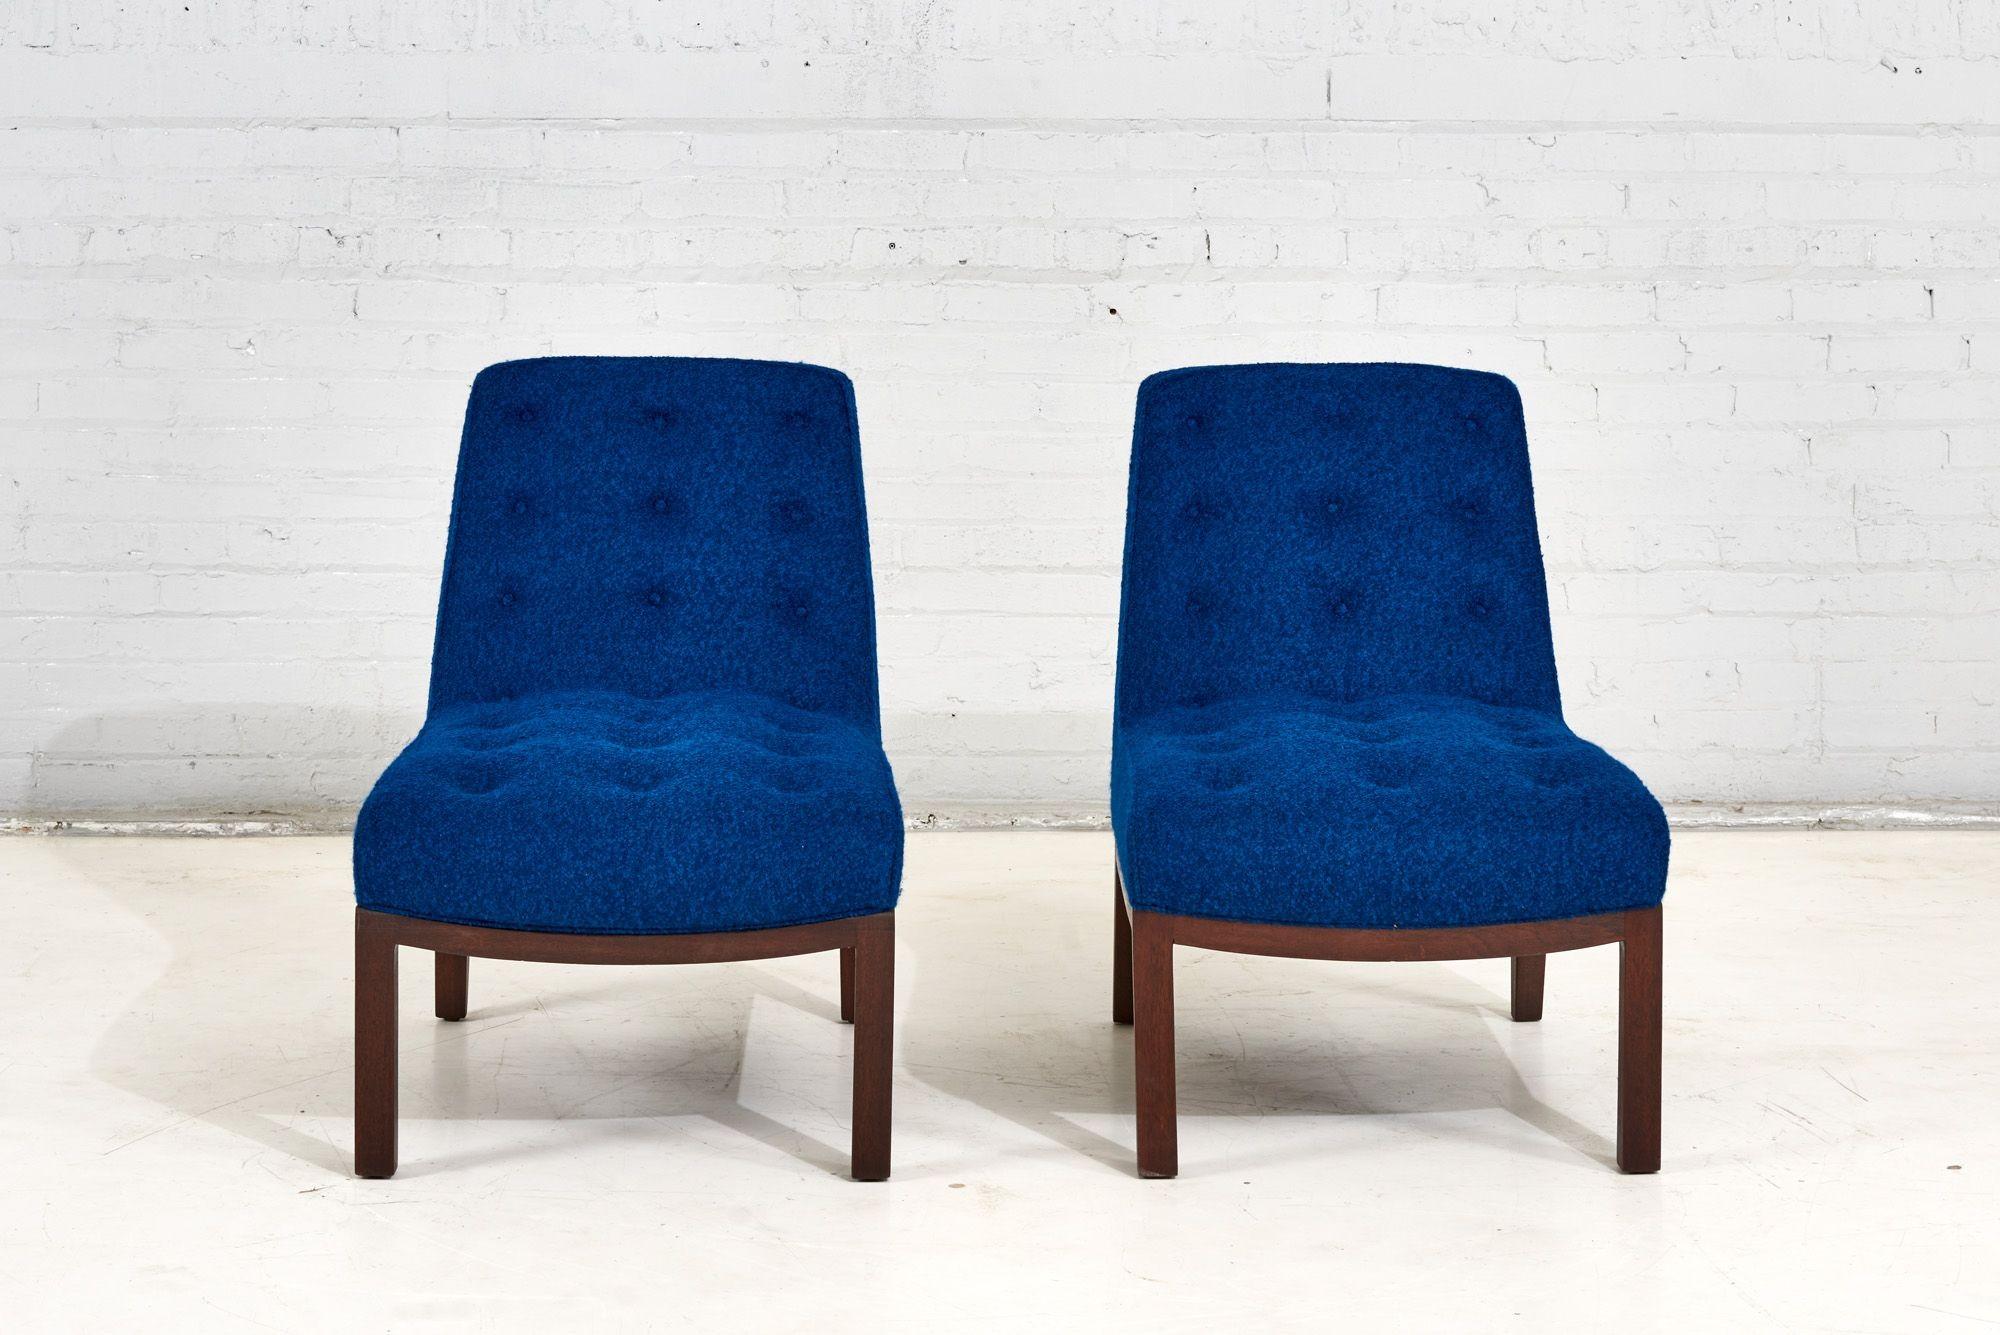 Paar Dunbar Lounge Slipper Chairs von Edward Wormley, 1960. Die Beine aus Nussbaumholz wurden restauriert und neu mit blauem Boucle gepolstert.